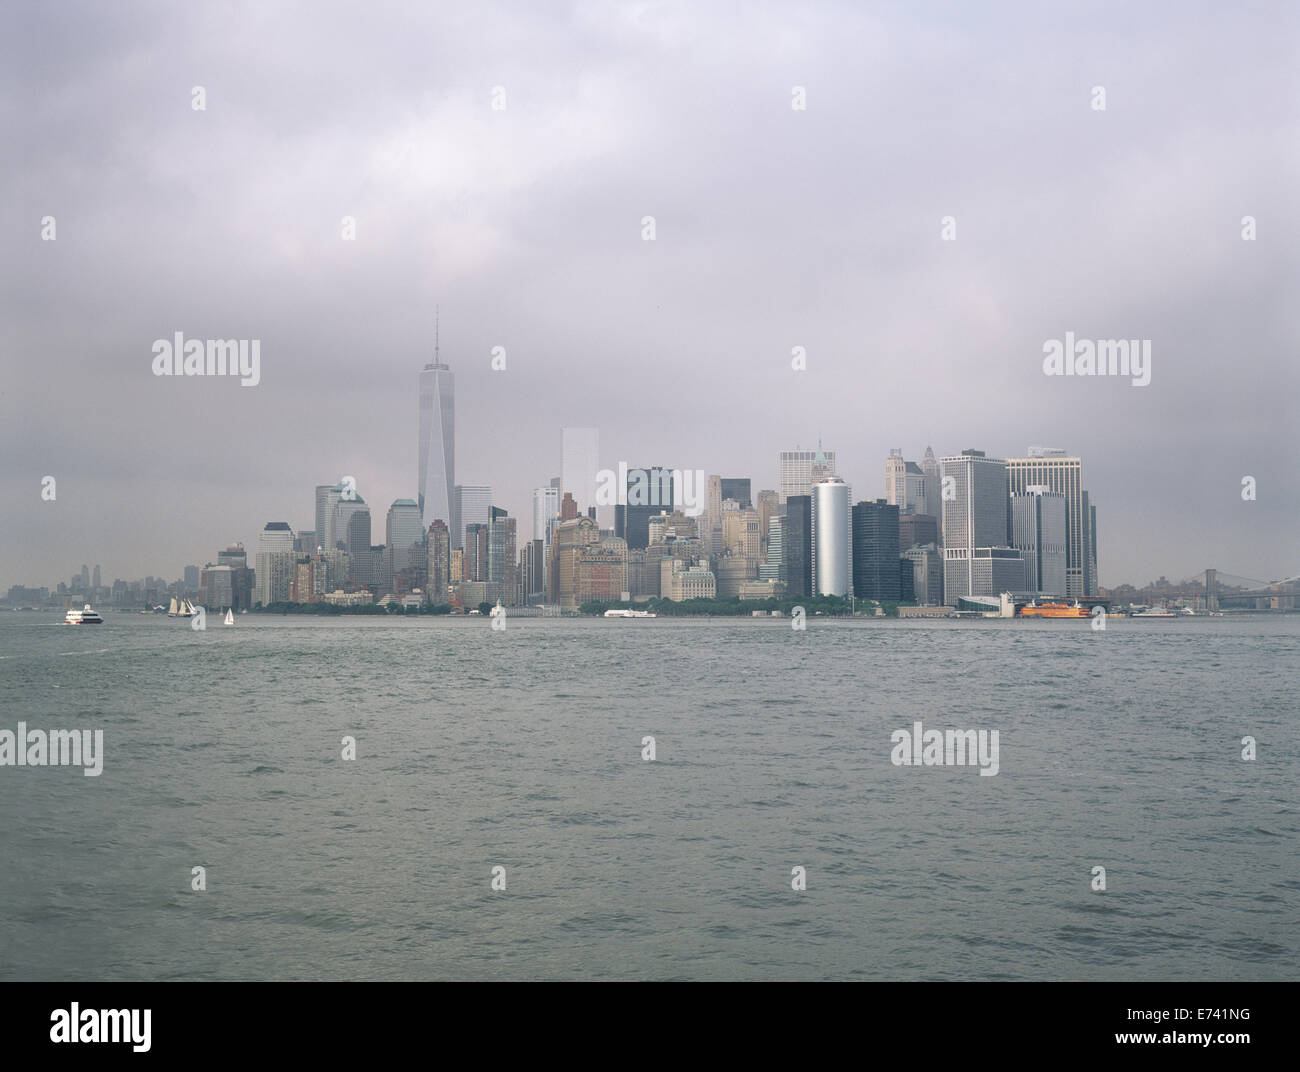 L'île de Manhattan sur un jour nuageux. Banque D'Images